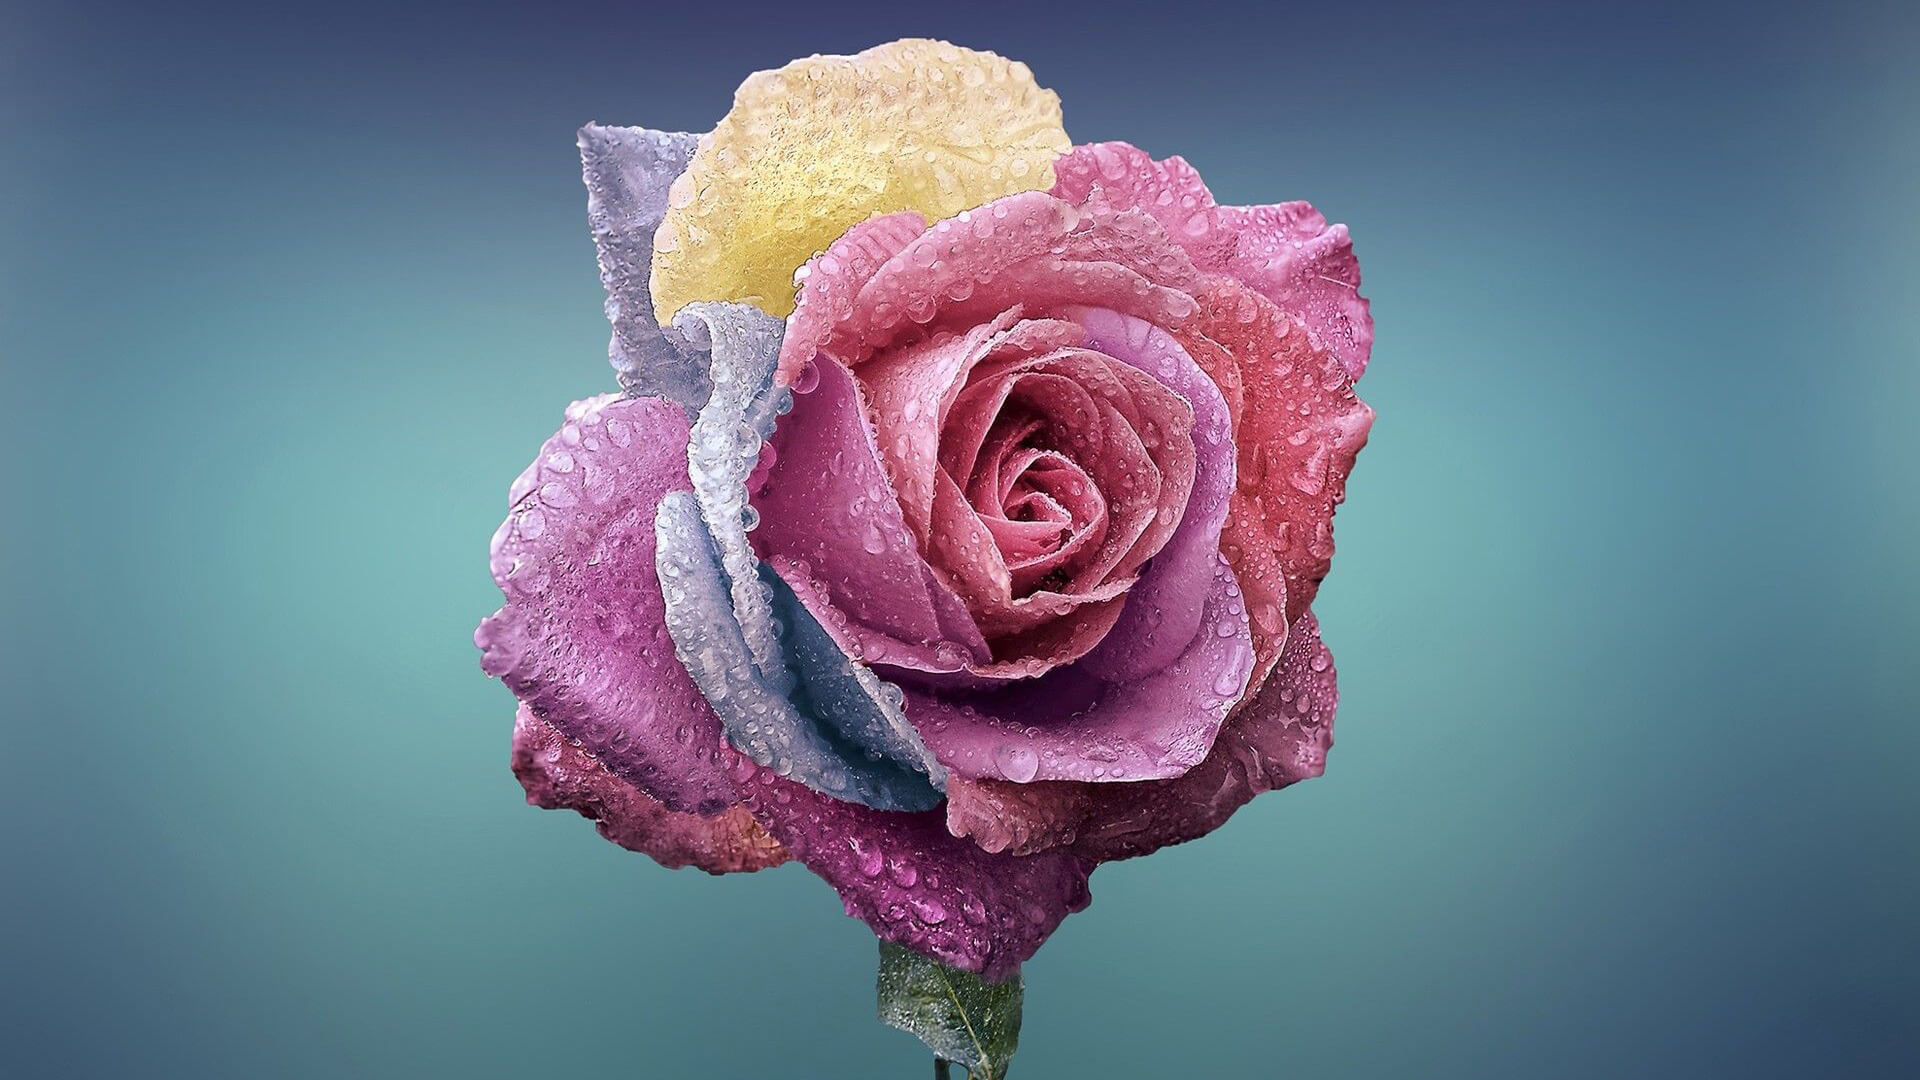 Tải hình nền hoa hồng đẹp nhất